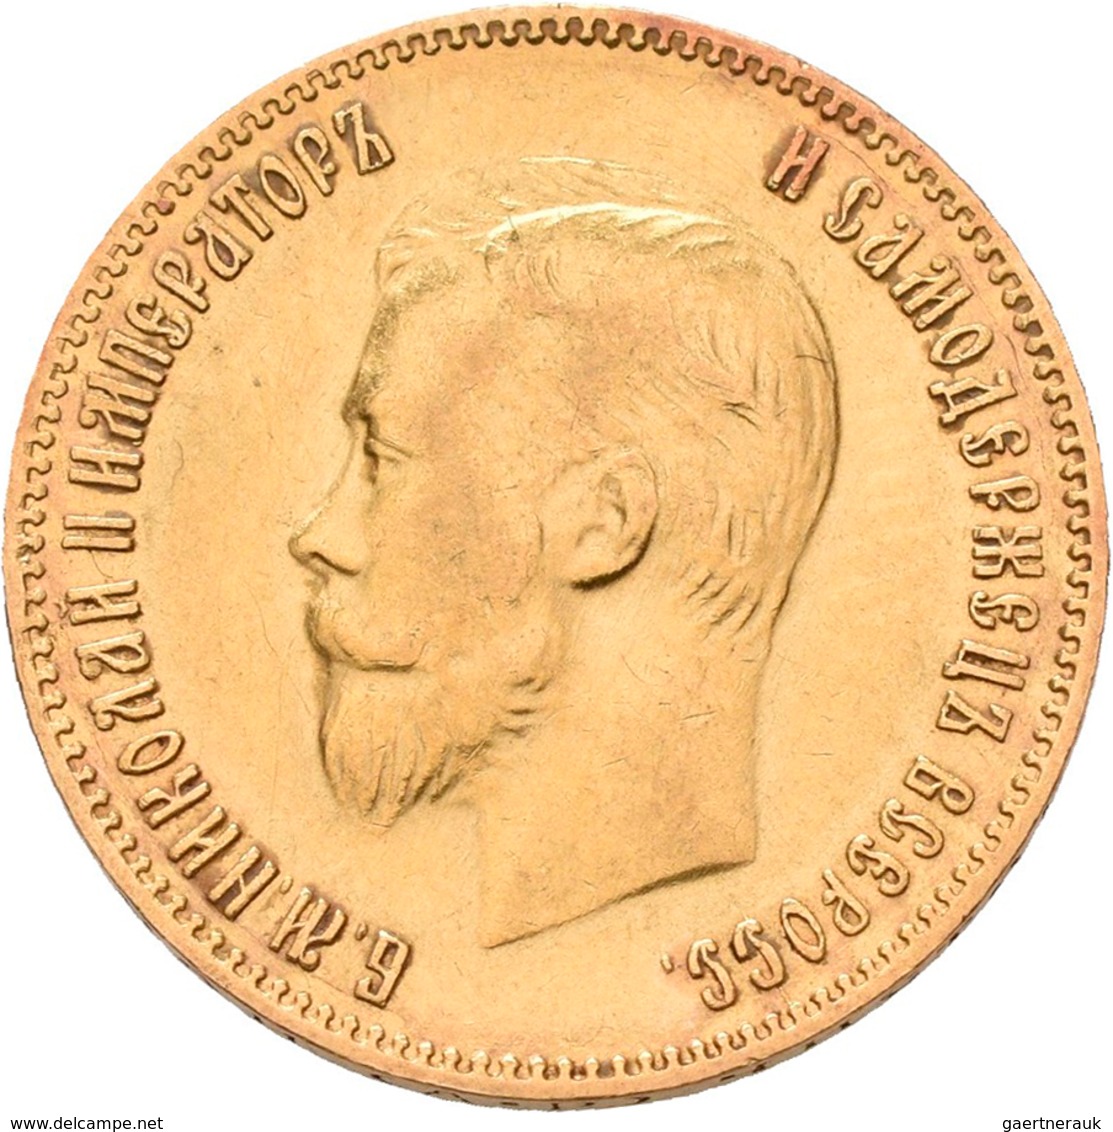 Russland - Anlagegold: Nikolaus II. 1894-1917: 10 Rubel 1903 (AR - Alexander Redko). KM Y# 64, Fried - Rusland